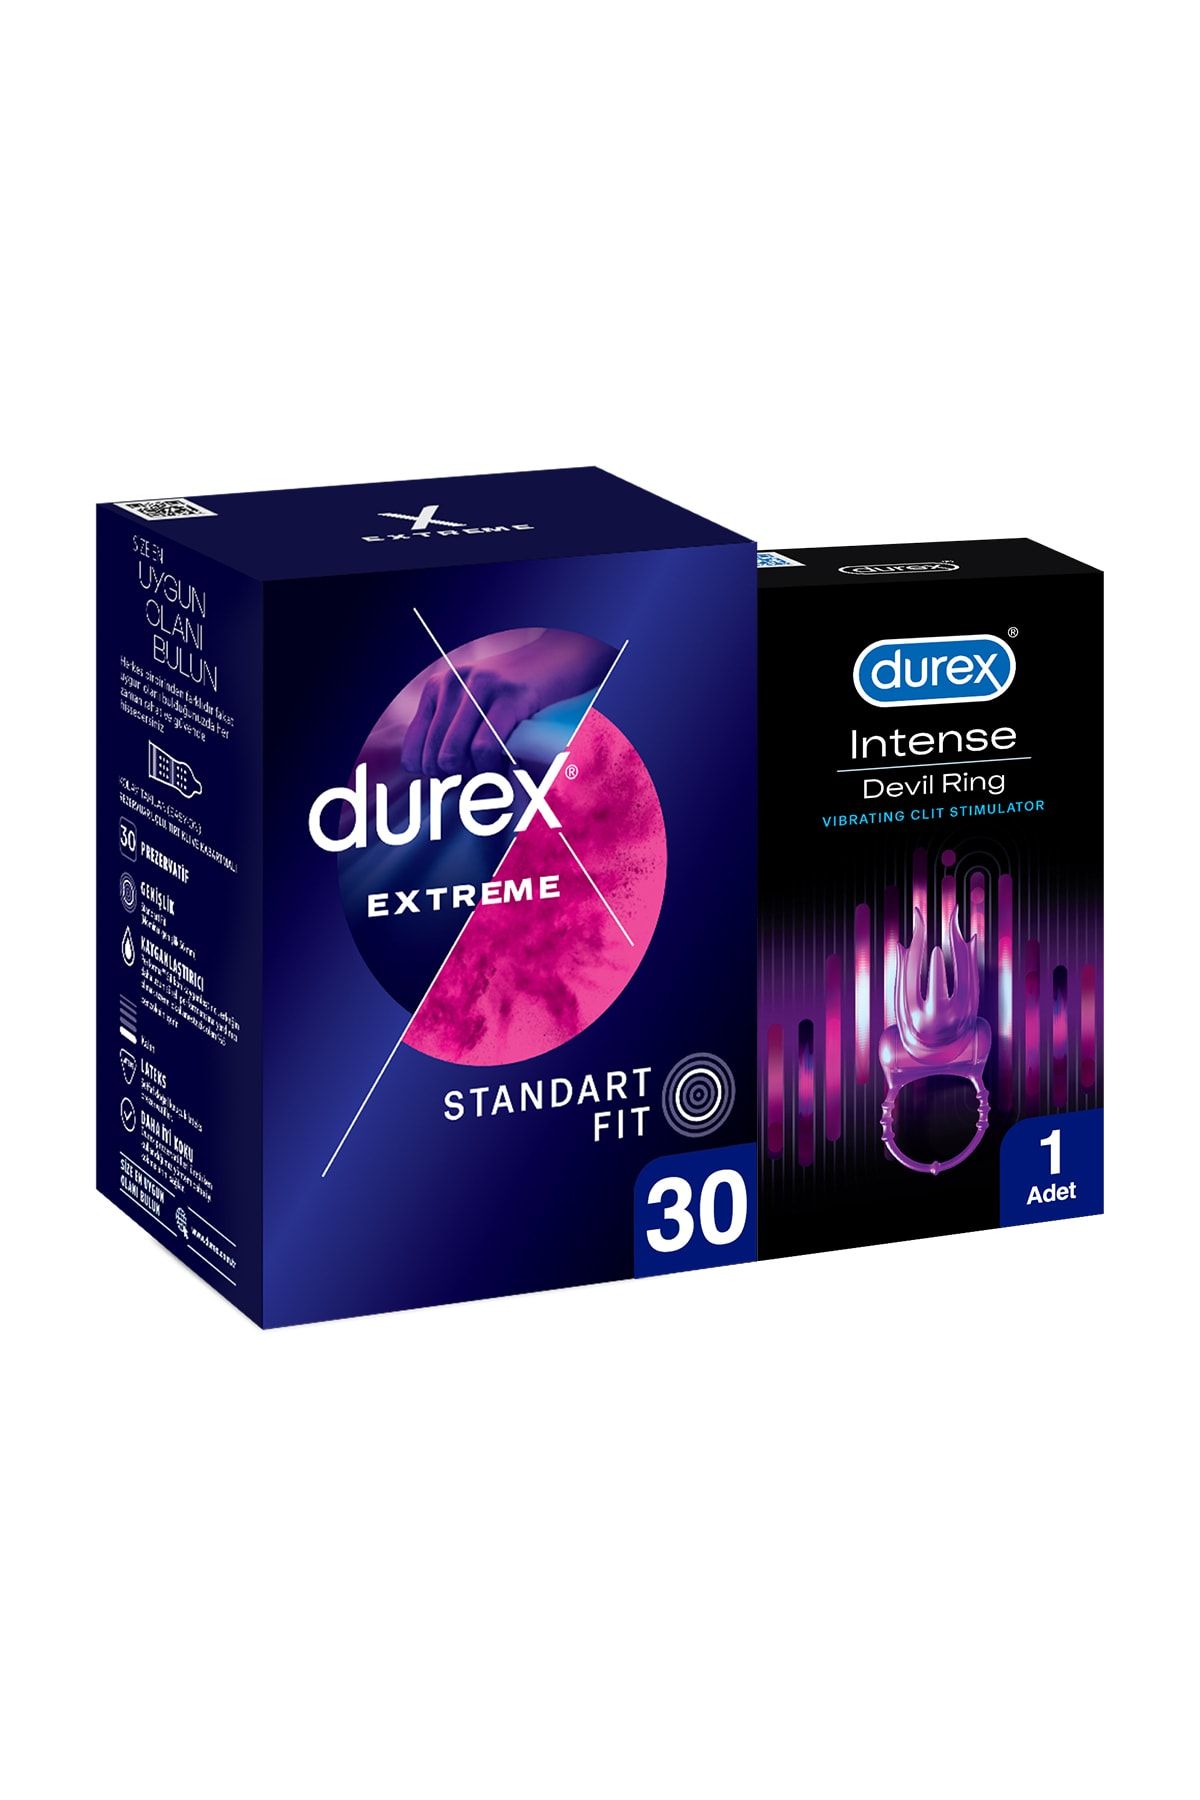 Durex Extreme 30'lu Geciktiricili Ve Tırtıklı Prezervatif+ Intense Devil Ring Titreşimli Halka